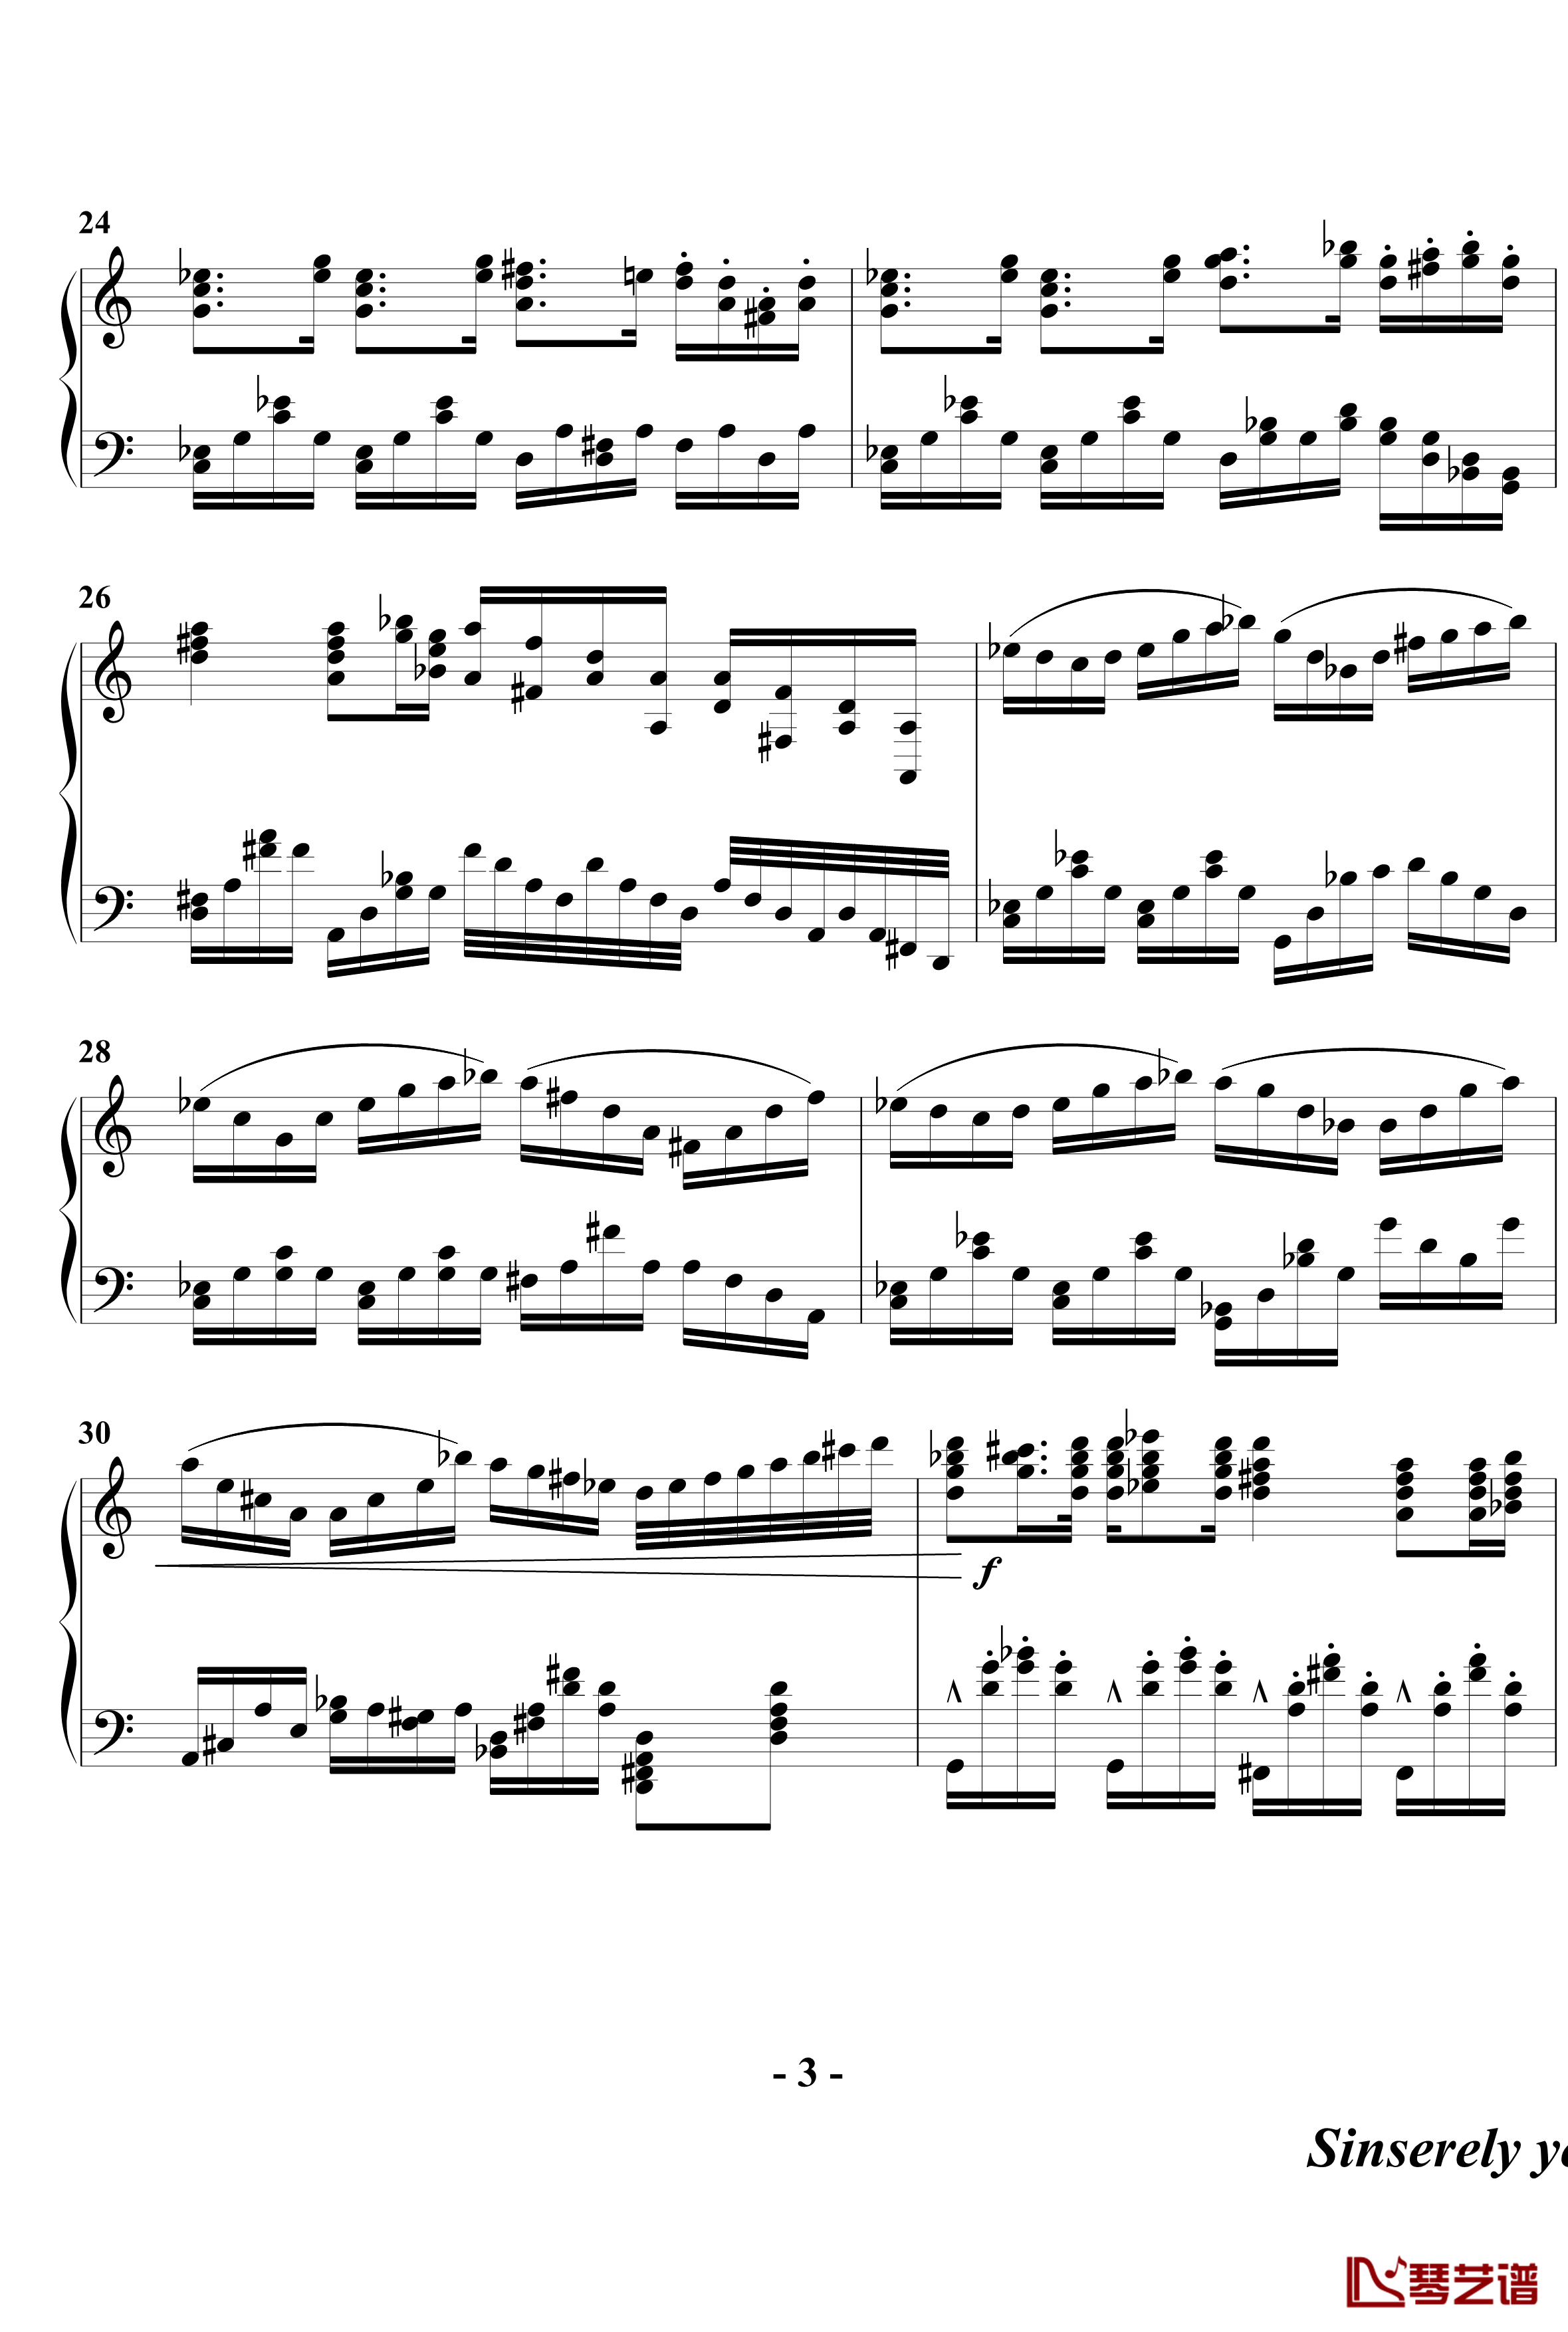 幻想奏鸣曲钢琴谱-第一乐章-beornotbe3